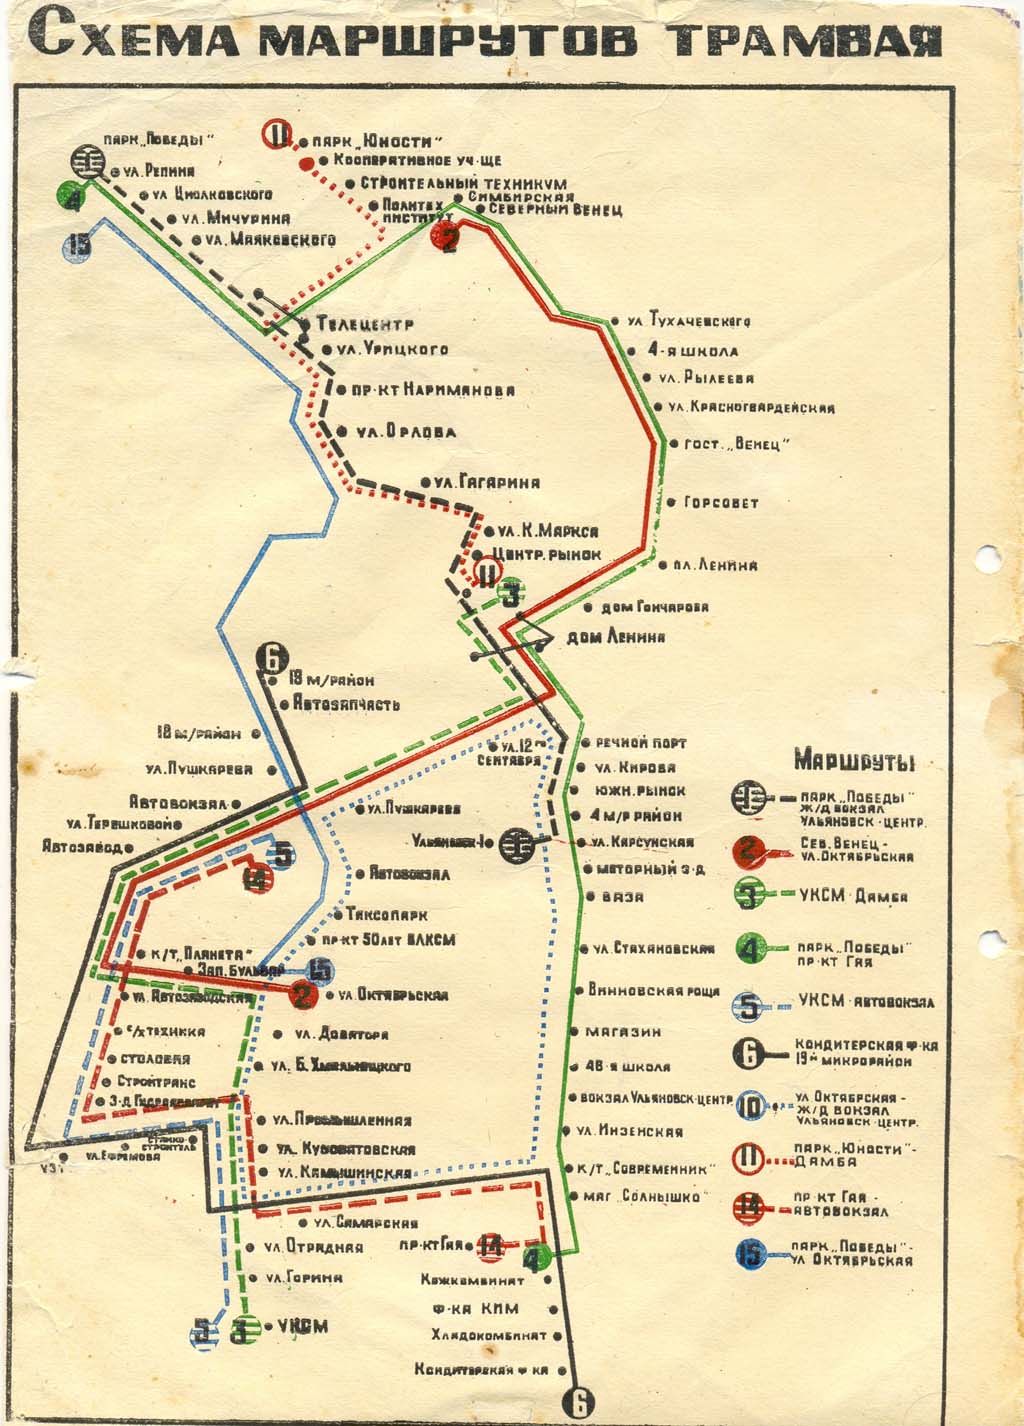 Uljanovsk — Maps